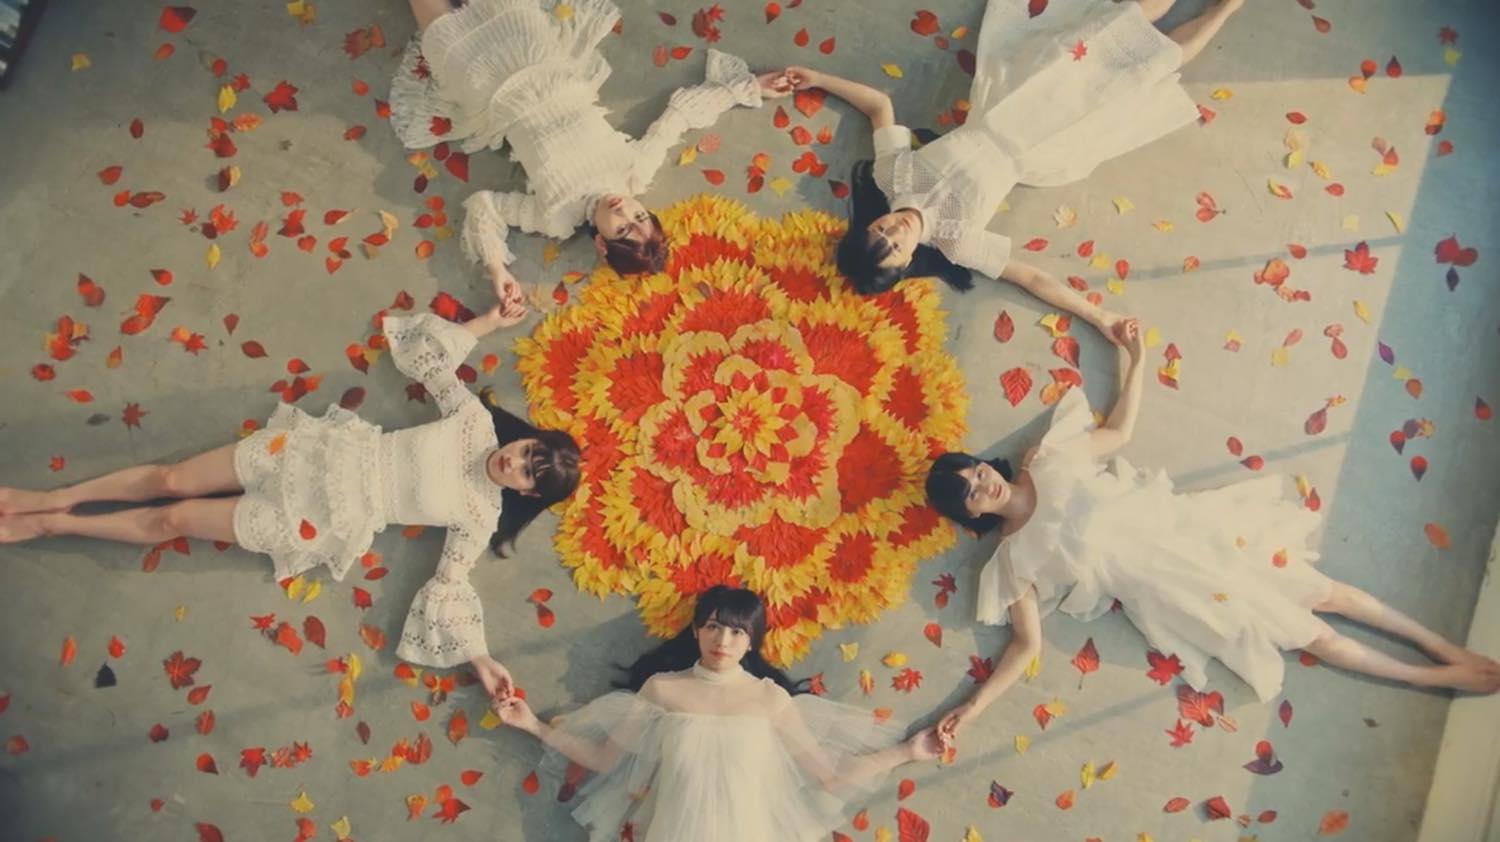 Aozora to MARRY (Keyakizaka46) Play With Fall Colors in the MV for “Namiuchigiwa wo Hashiranai ka?”